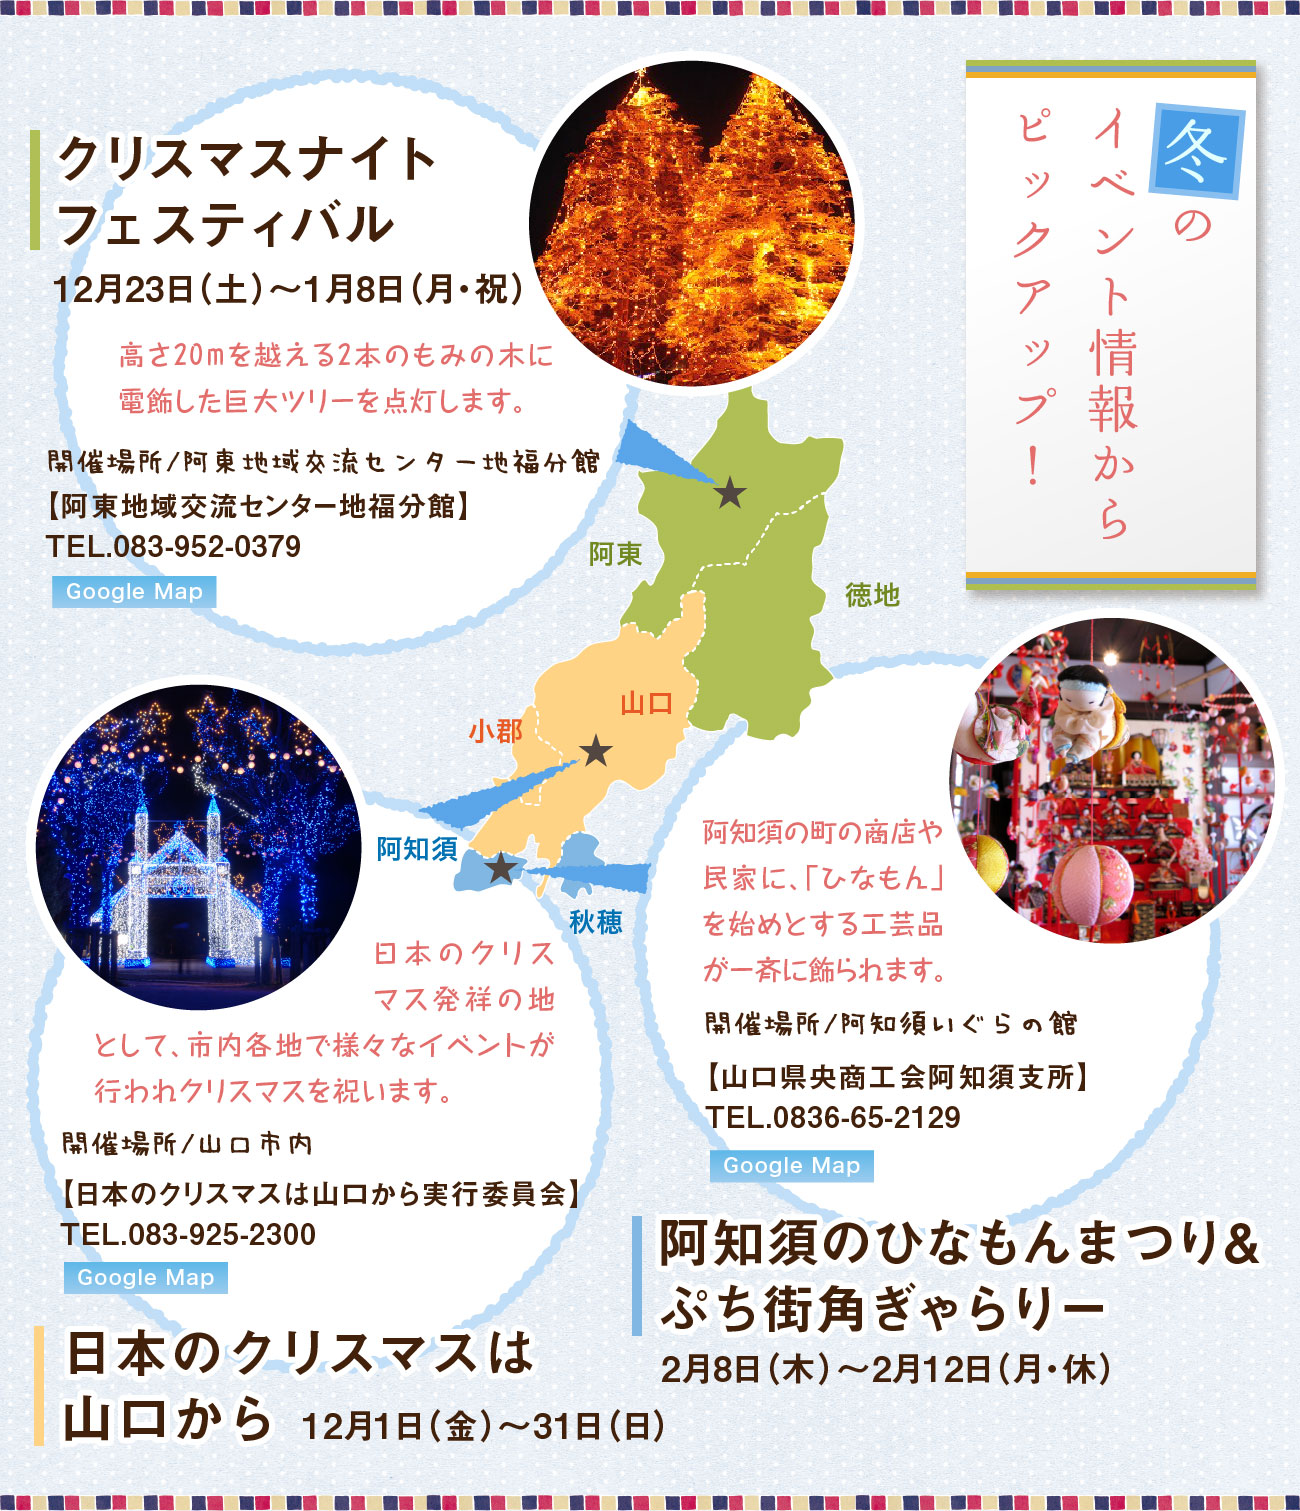 冬のイベント情報からピックアップ！、クリスマスナイトフェスティバル中止、日本のクリスマスは山口から、阿知須ひなもんまつり&街角ぎゃらりー